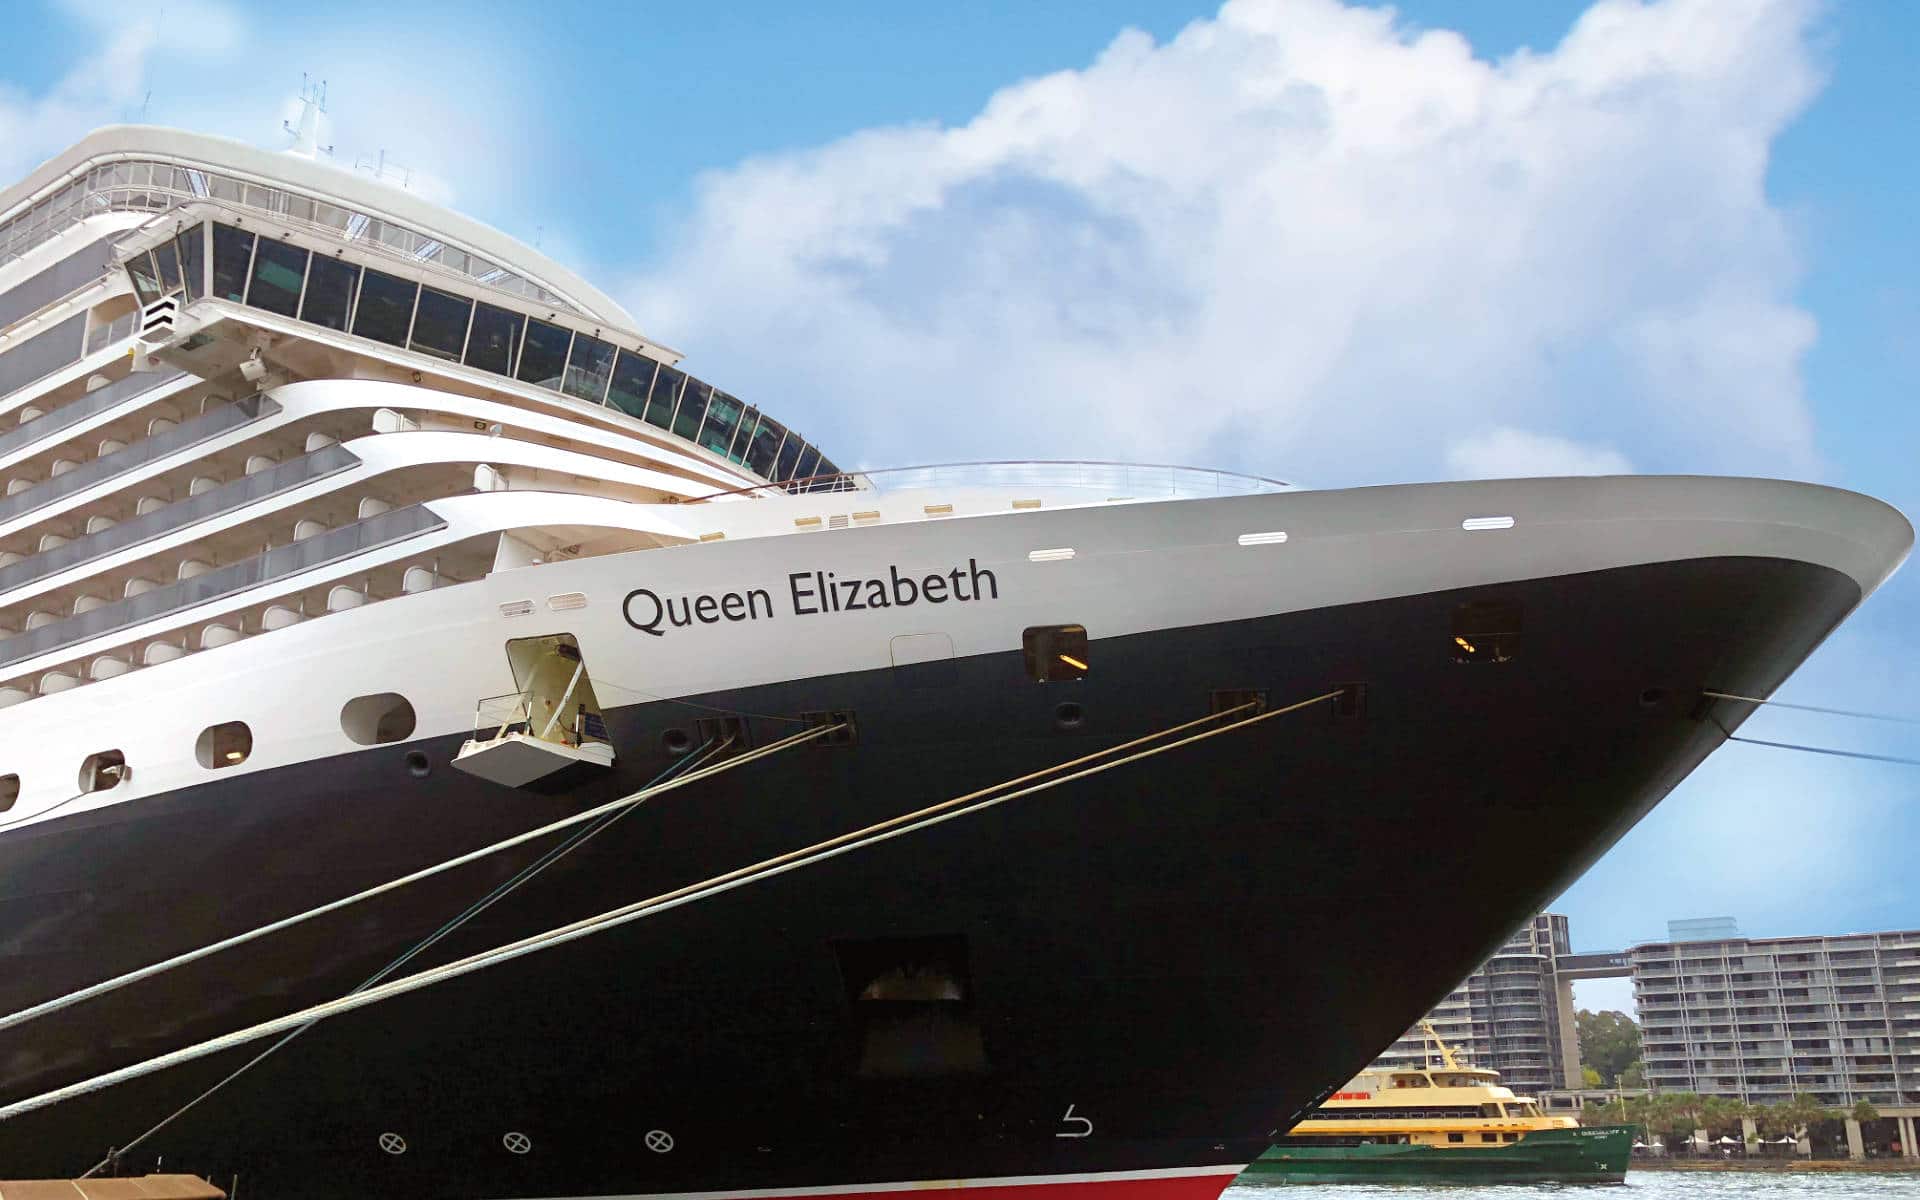 The Queen Elizabeth cruise ship.